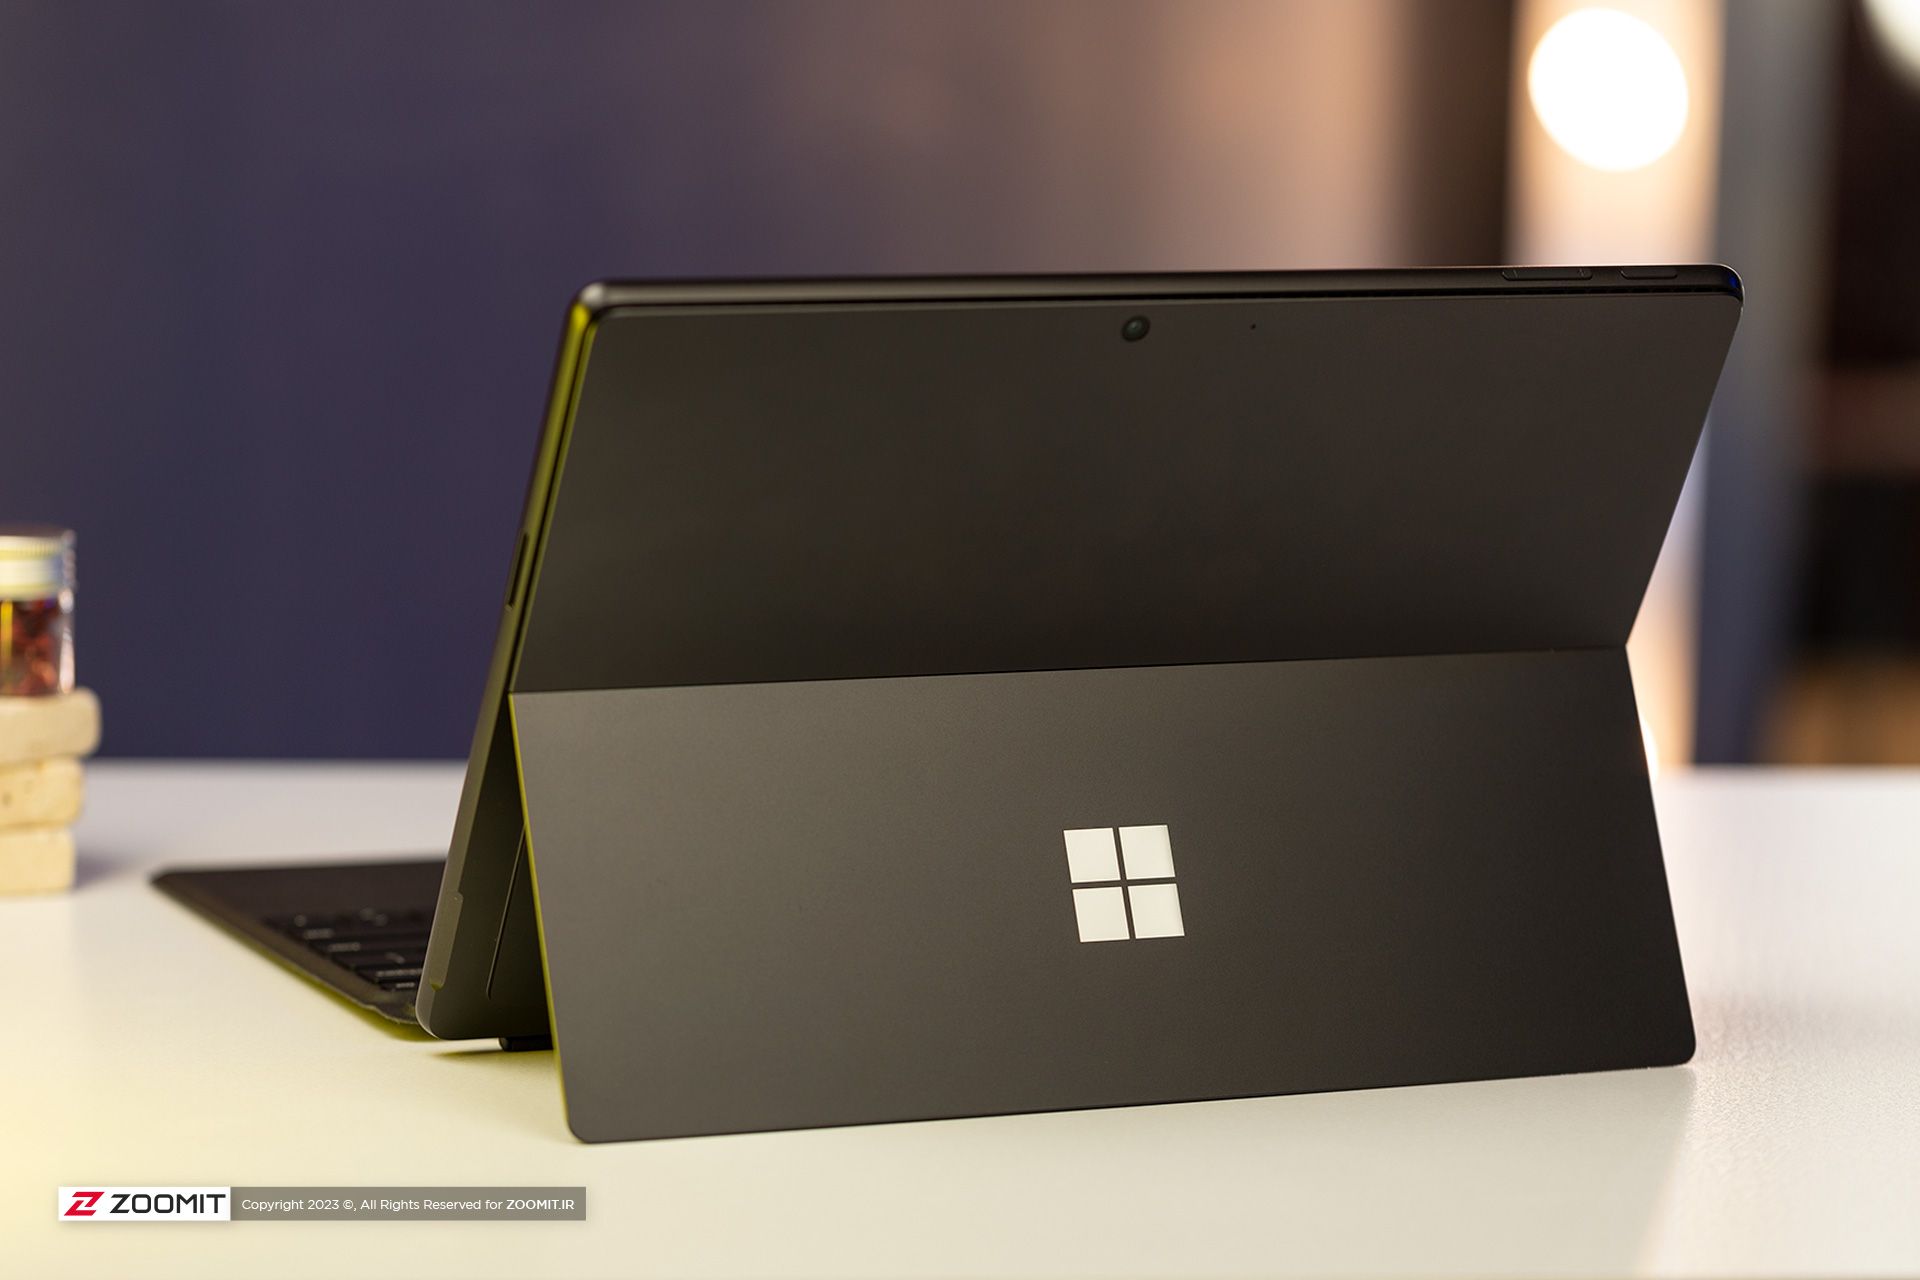 پشت لپ تاپ سرفیس پرو 9 مایکروسافت / Microsoft Surface Pro 9